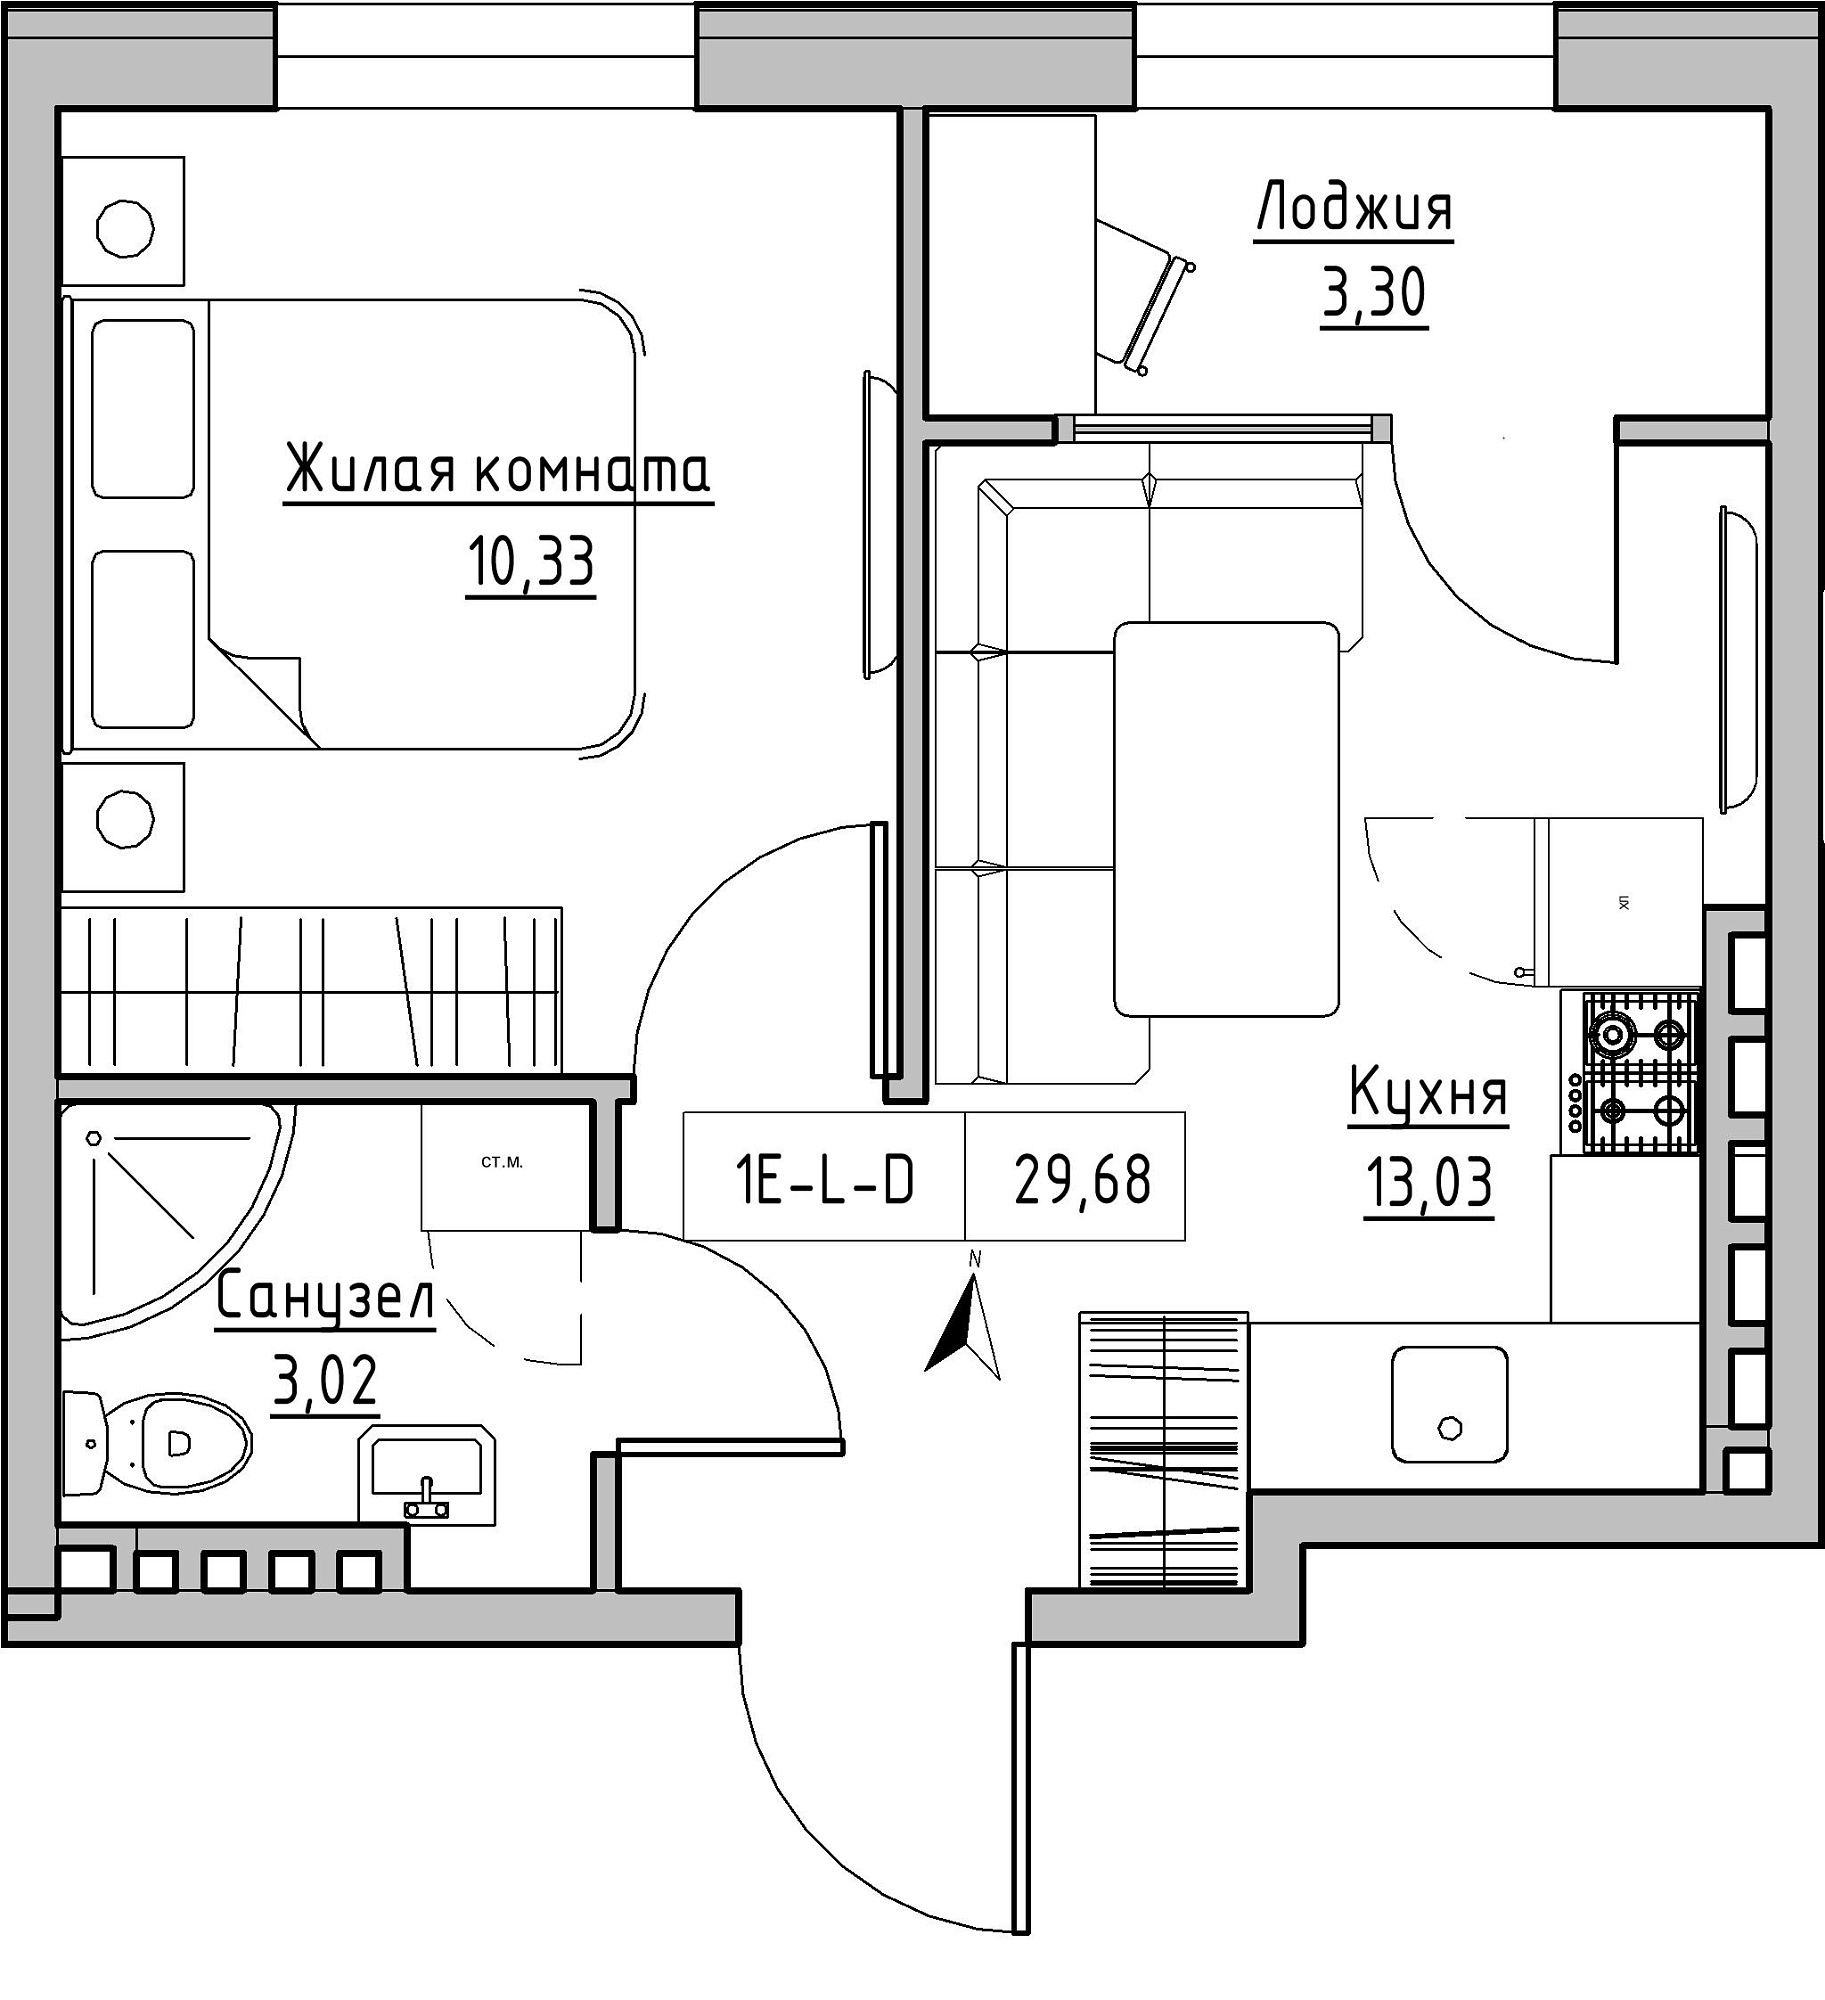 Планування 1-к квартира площею 29.68м2, KS-024-05/0001.